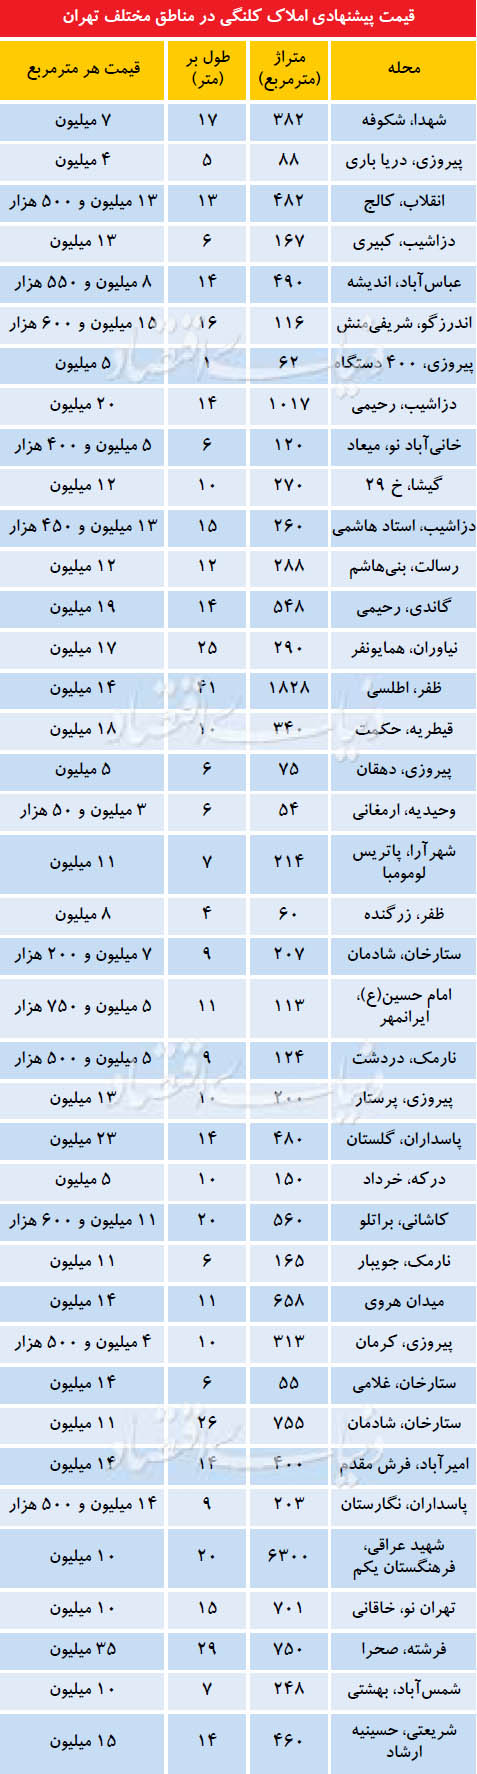 قیمت پیشنهادی برخی املاک کلنگی در مناطق مختلف تهران 